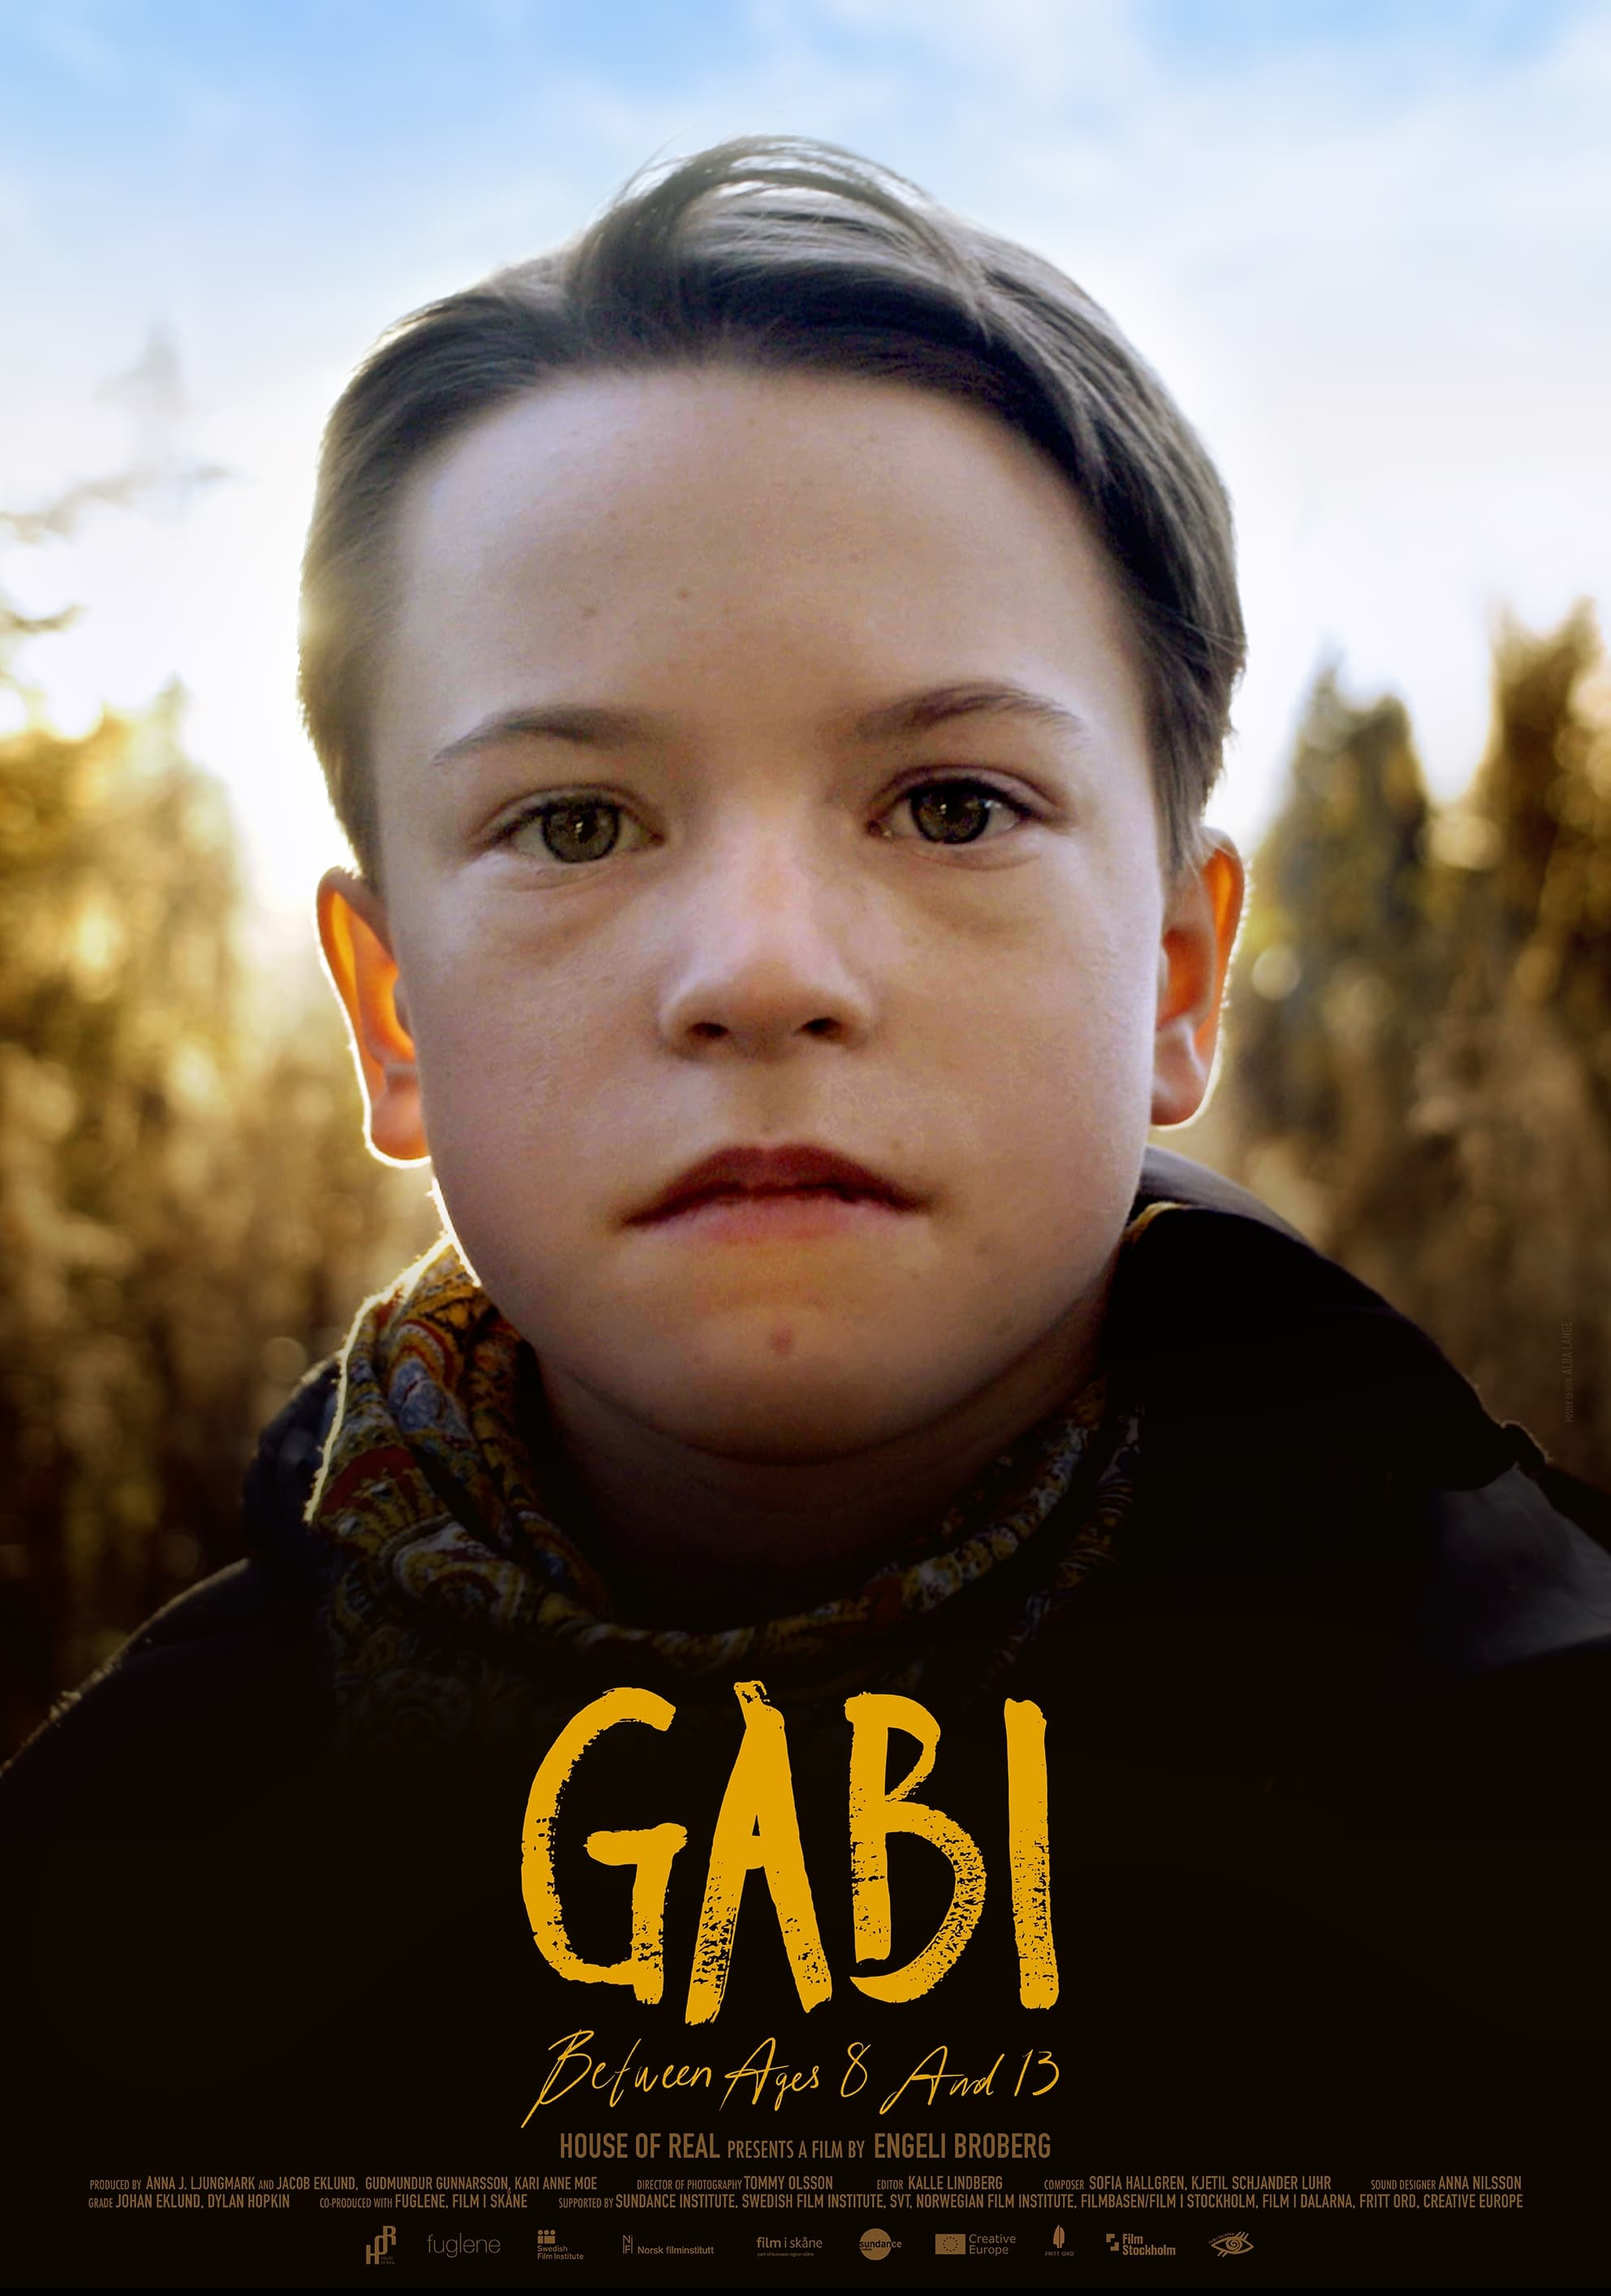 Gabi, de los 8 a los 13 años